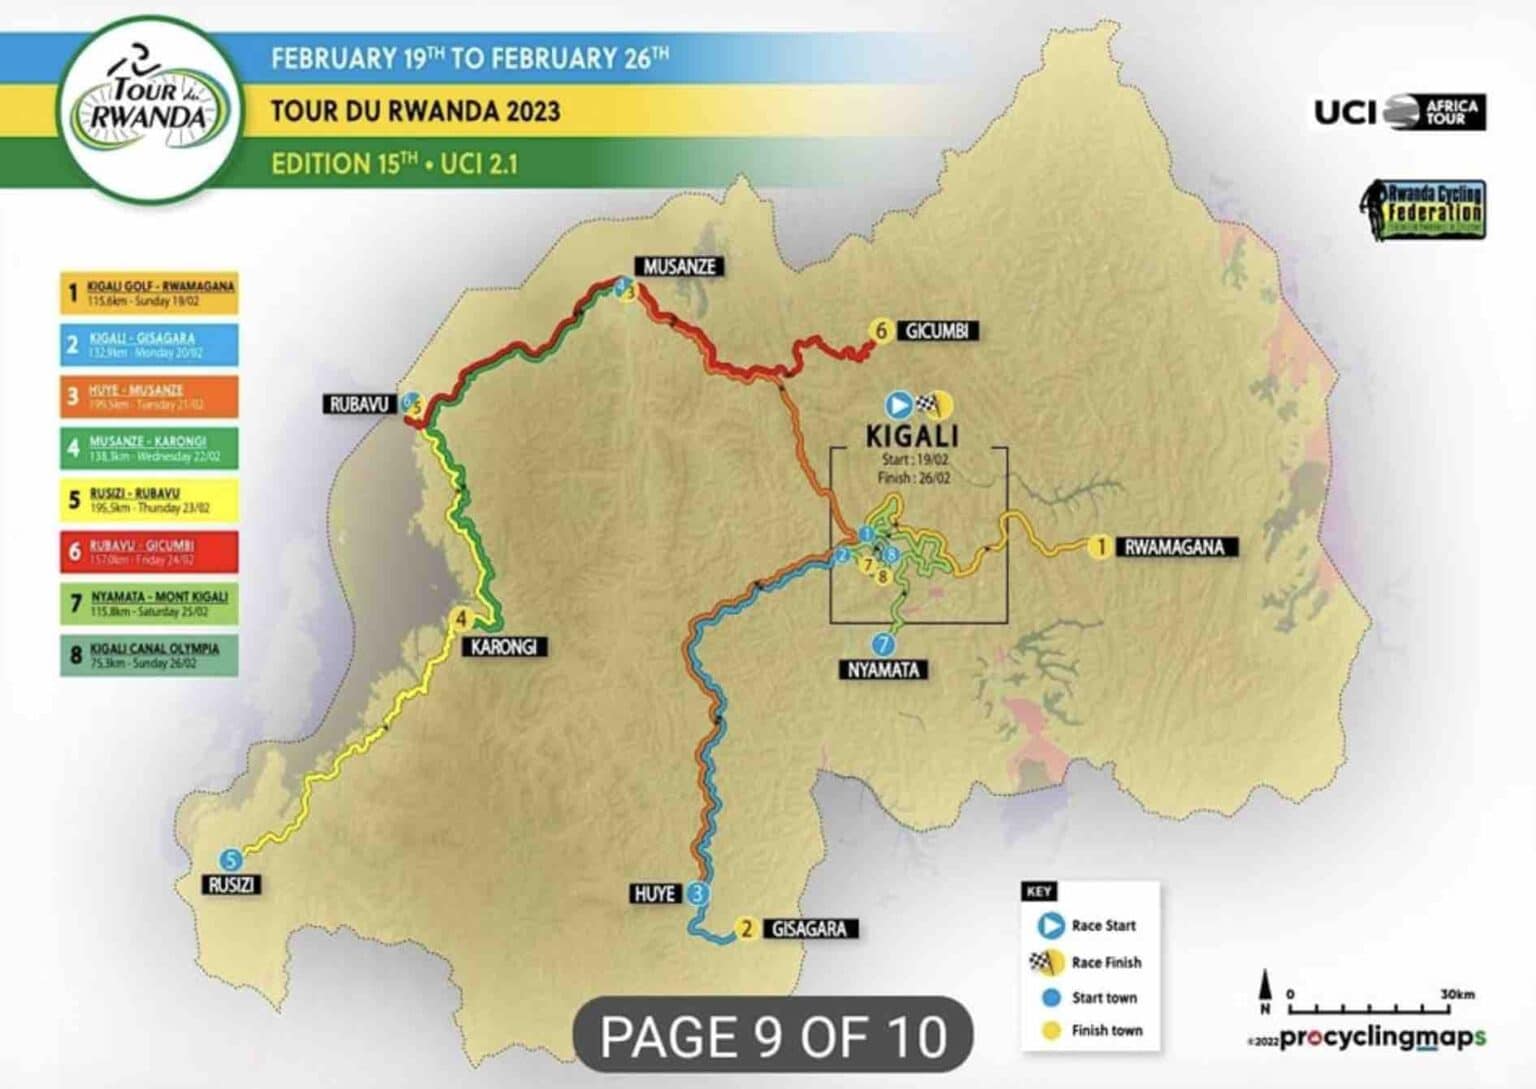 tour du rwanda 2023 schedule